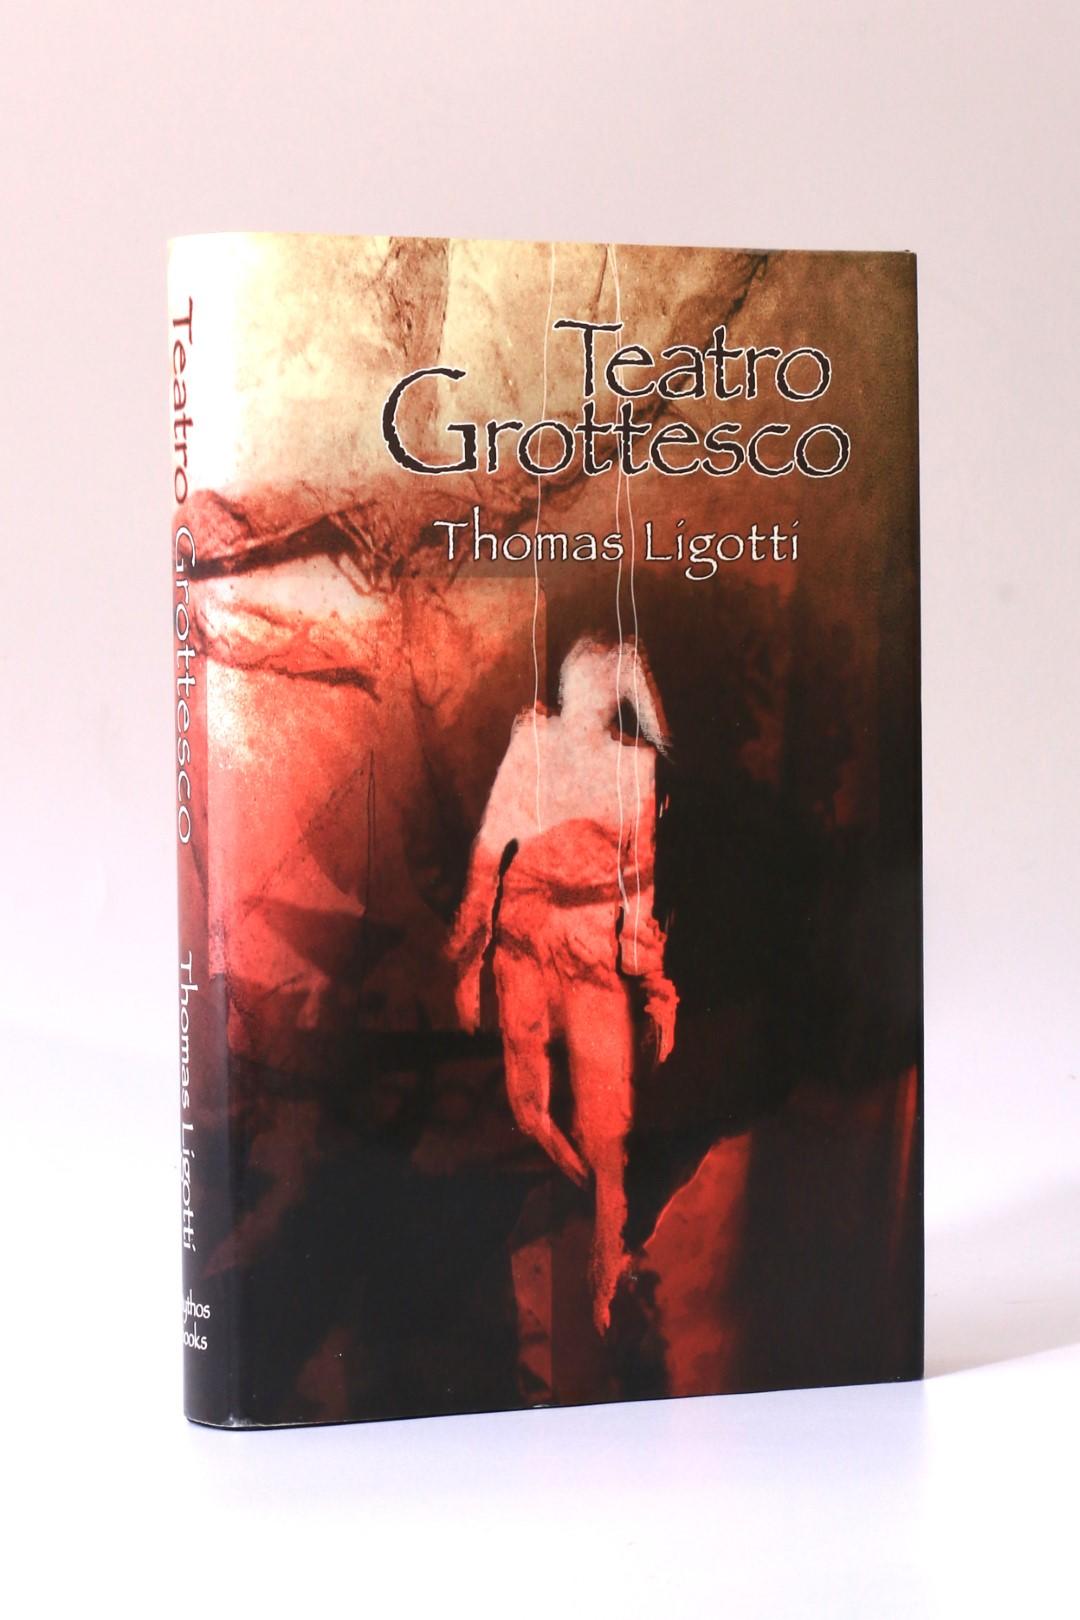 Thomas Ligotti - Teatro Grottesco - Mythos Books, 2007, First Edition.